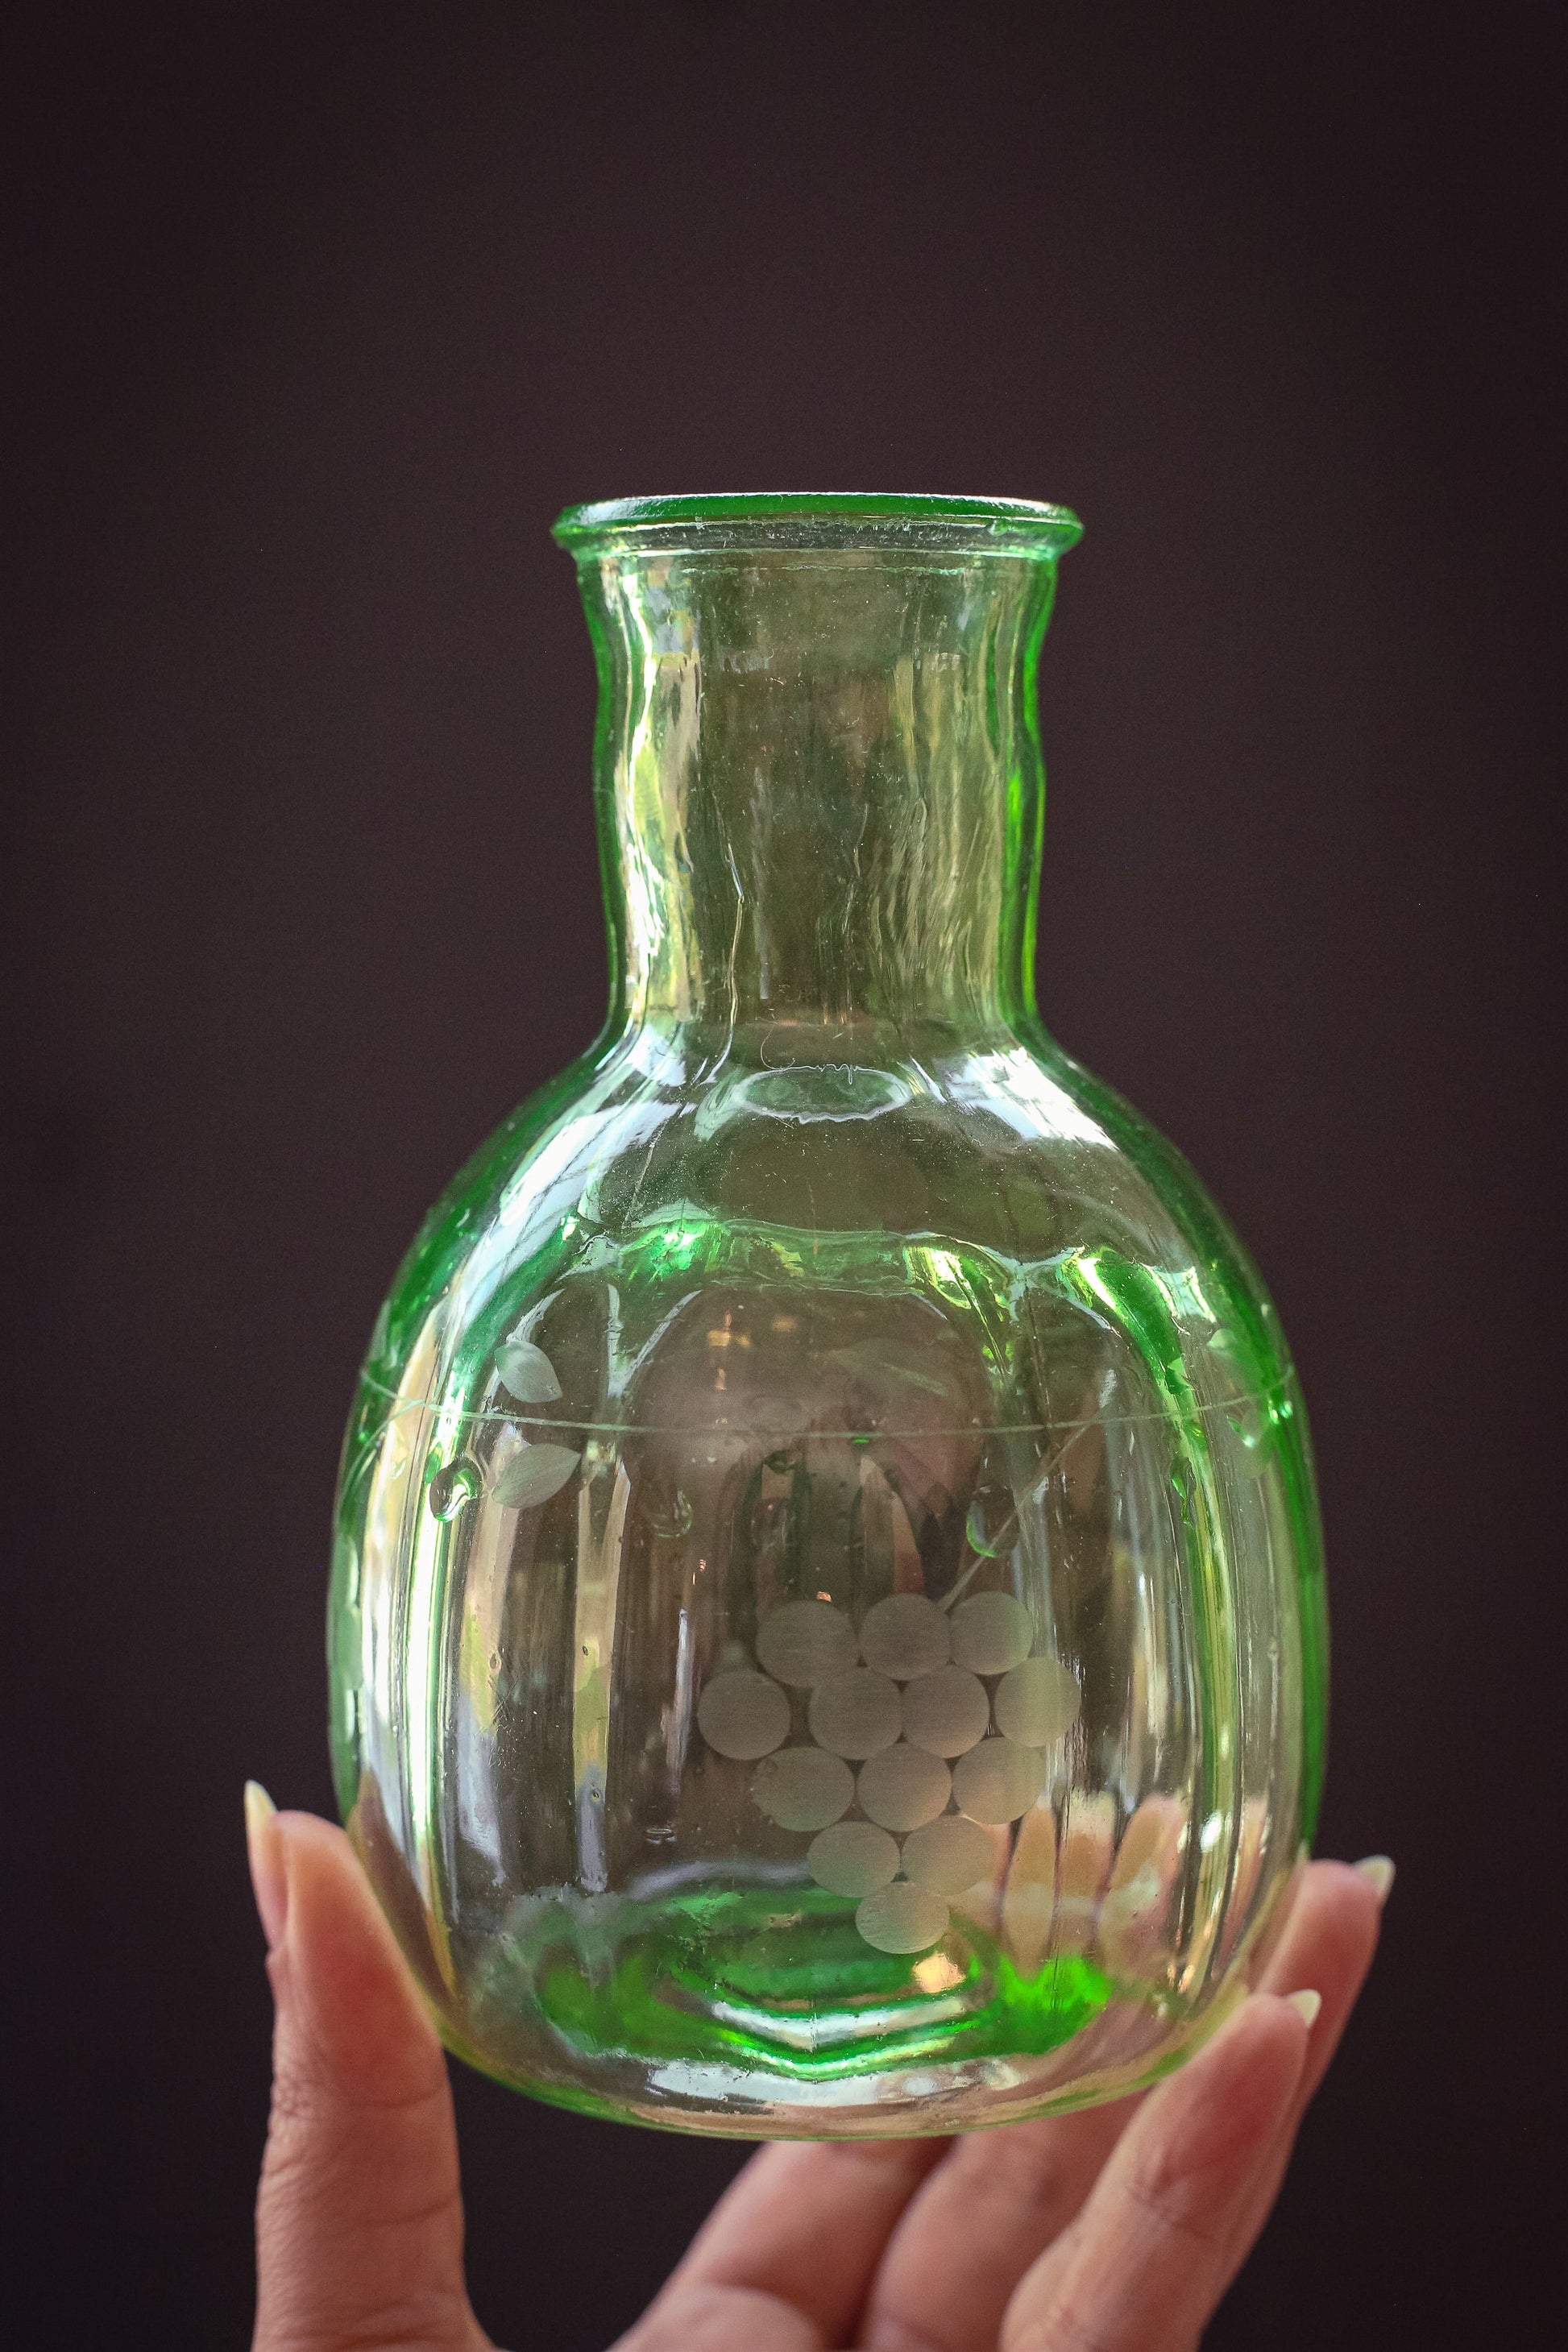 Green Uranium Glass Vase/Carafe - Vintage Depression Vaseline Glass Bottle